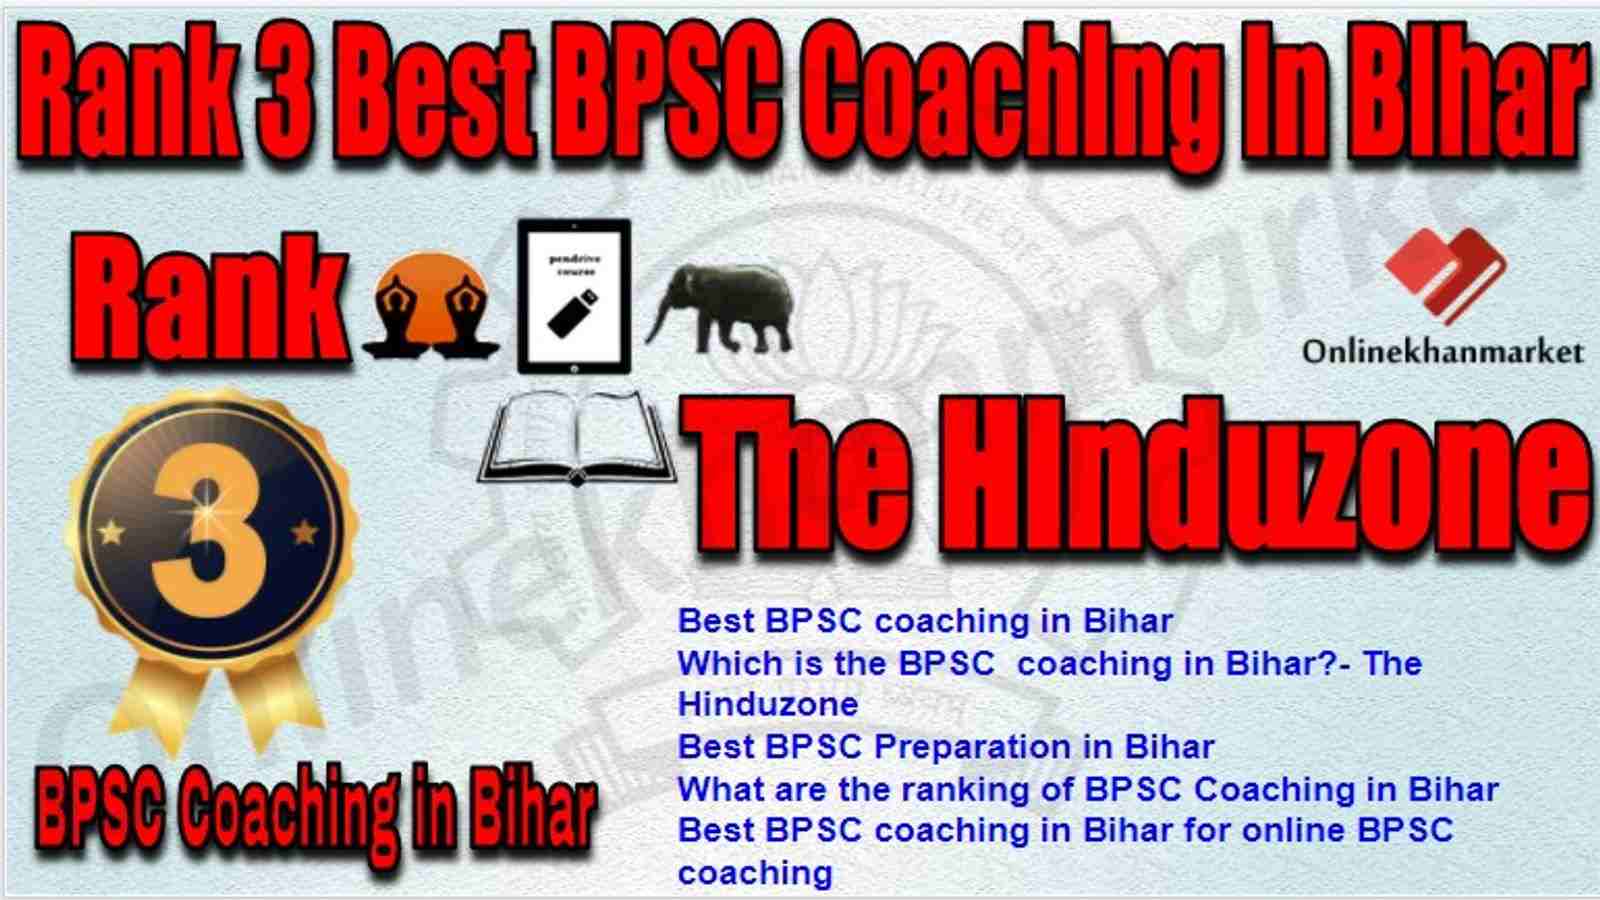 Rank 3 Best BPSC Coaching in bihar